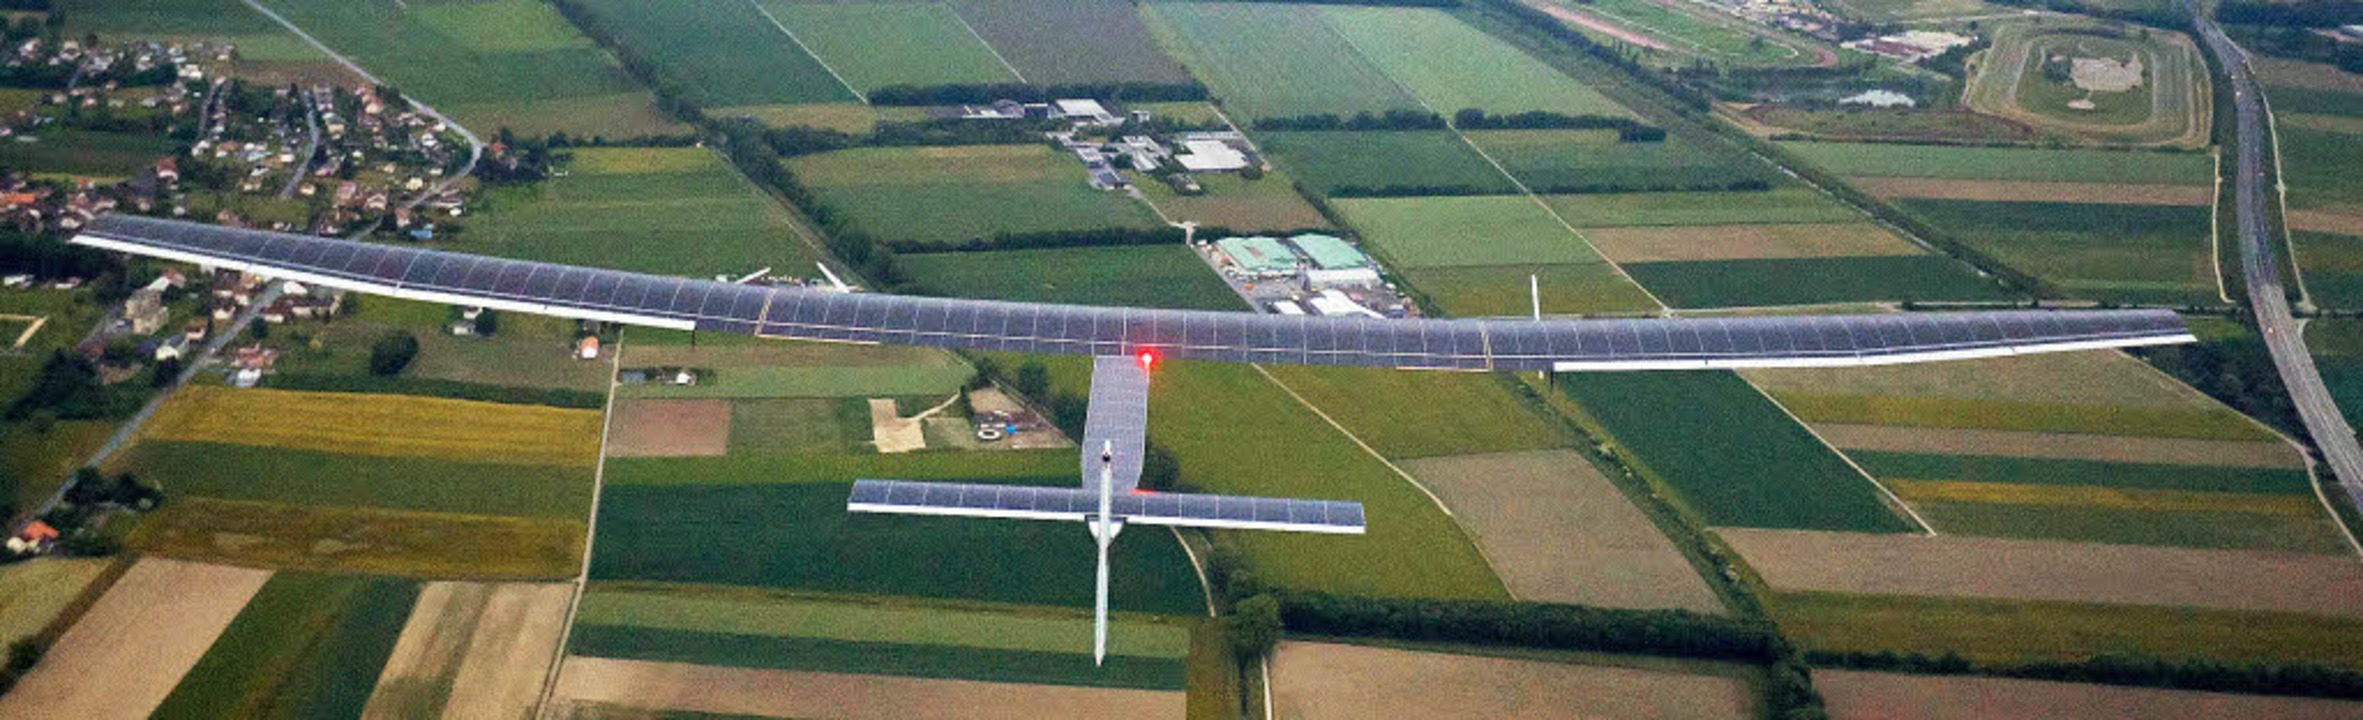 17200 Solarzellen auf den Flügeln: Das...se 2 hat eine Spannweite von 72 Metern  | Foto: AFP